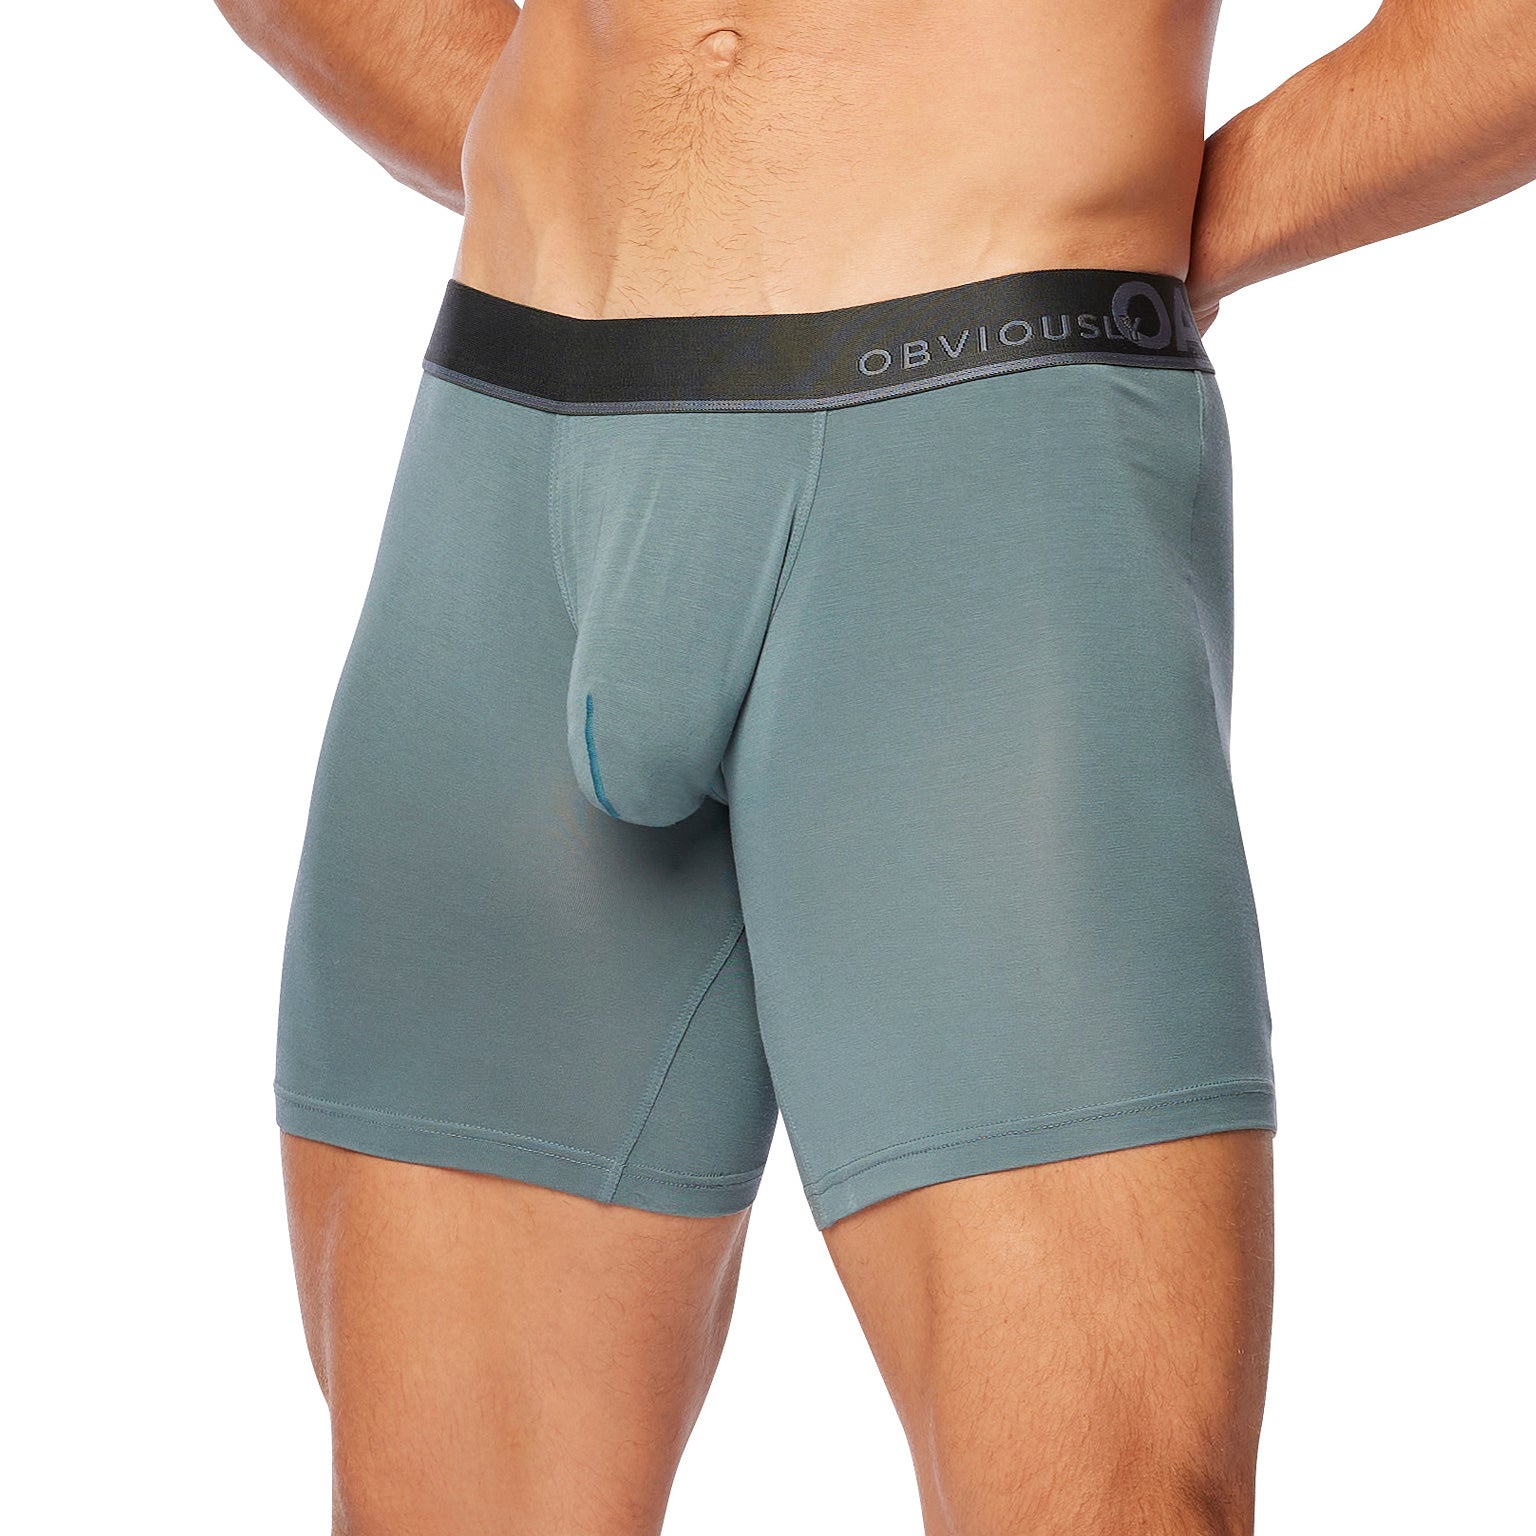 Fashion 6In 1 Men's Underwear Boxer Cotton Underwear